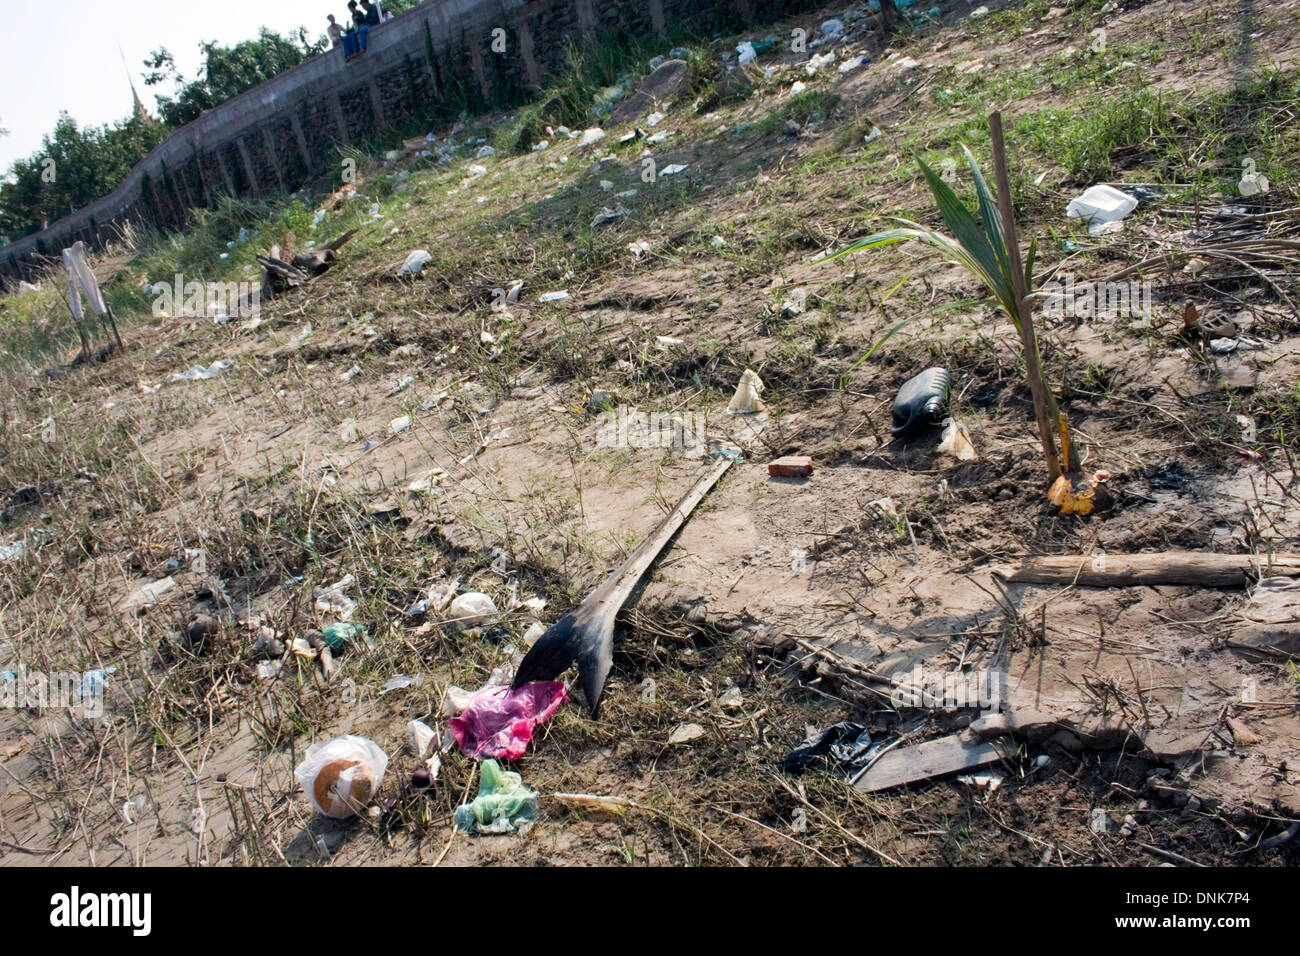 Des sacs en plastique et autres déchets se sont accumulés dans les mauvaises herbes sur la rive du Mékong dans la région de Kampong Cham, au Cambodge. Banque D'Images